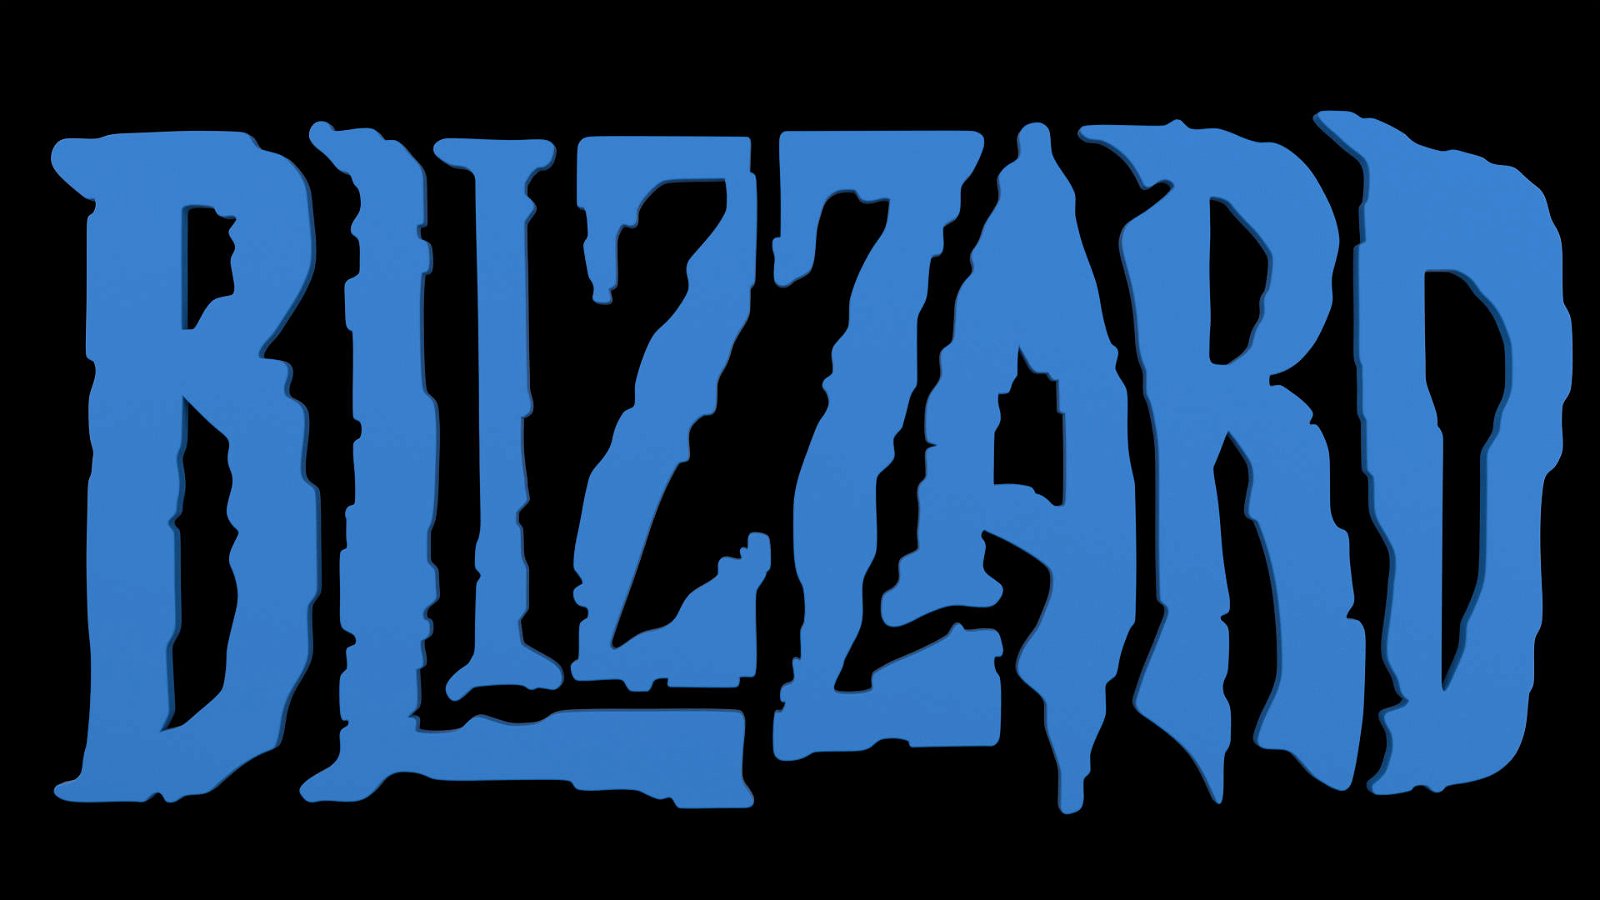 Immagine di Blizzard annuncia un importante cambio di leadership